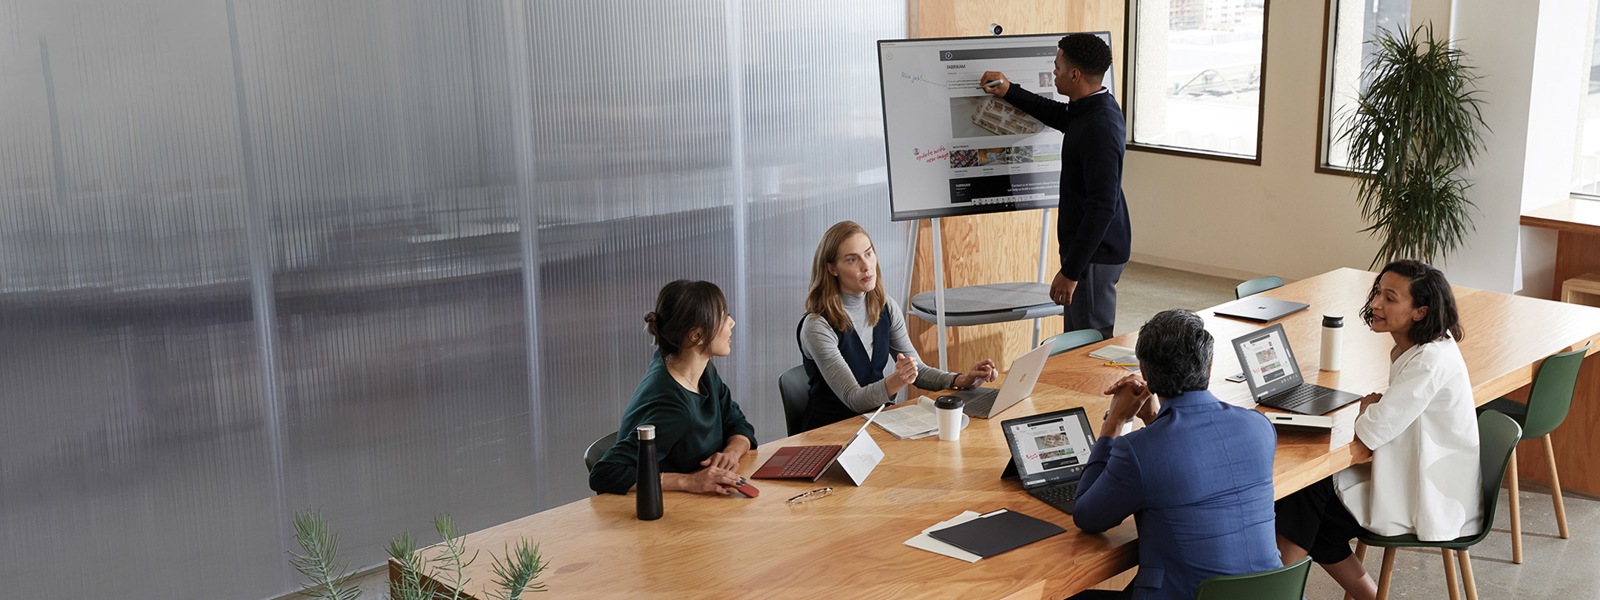 モダンな会議室で Surface Laptop を使い共同作業を行っている同僚たち。